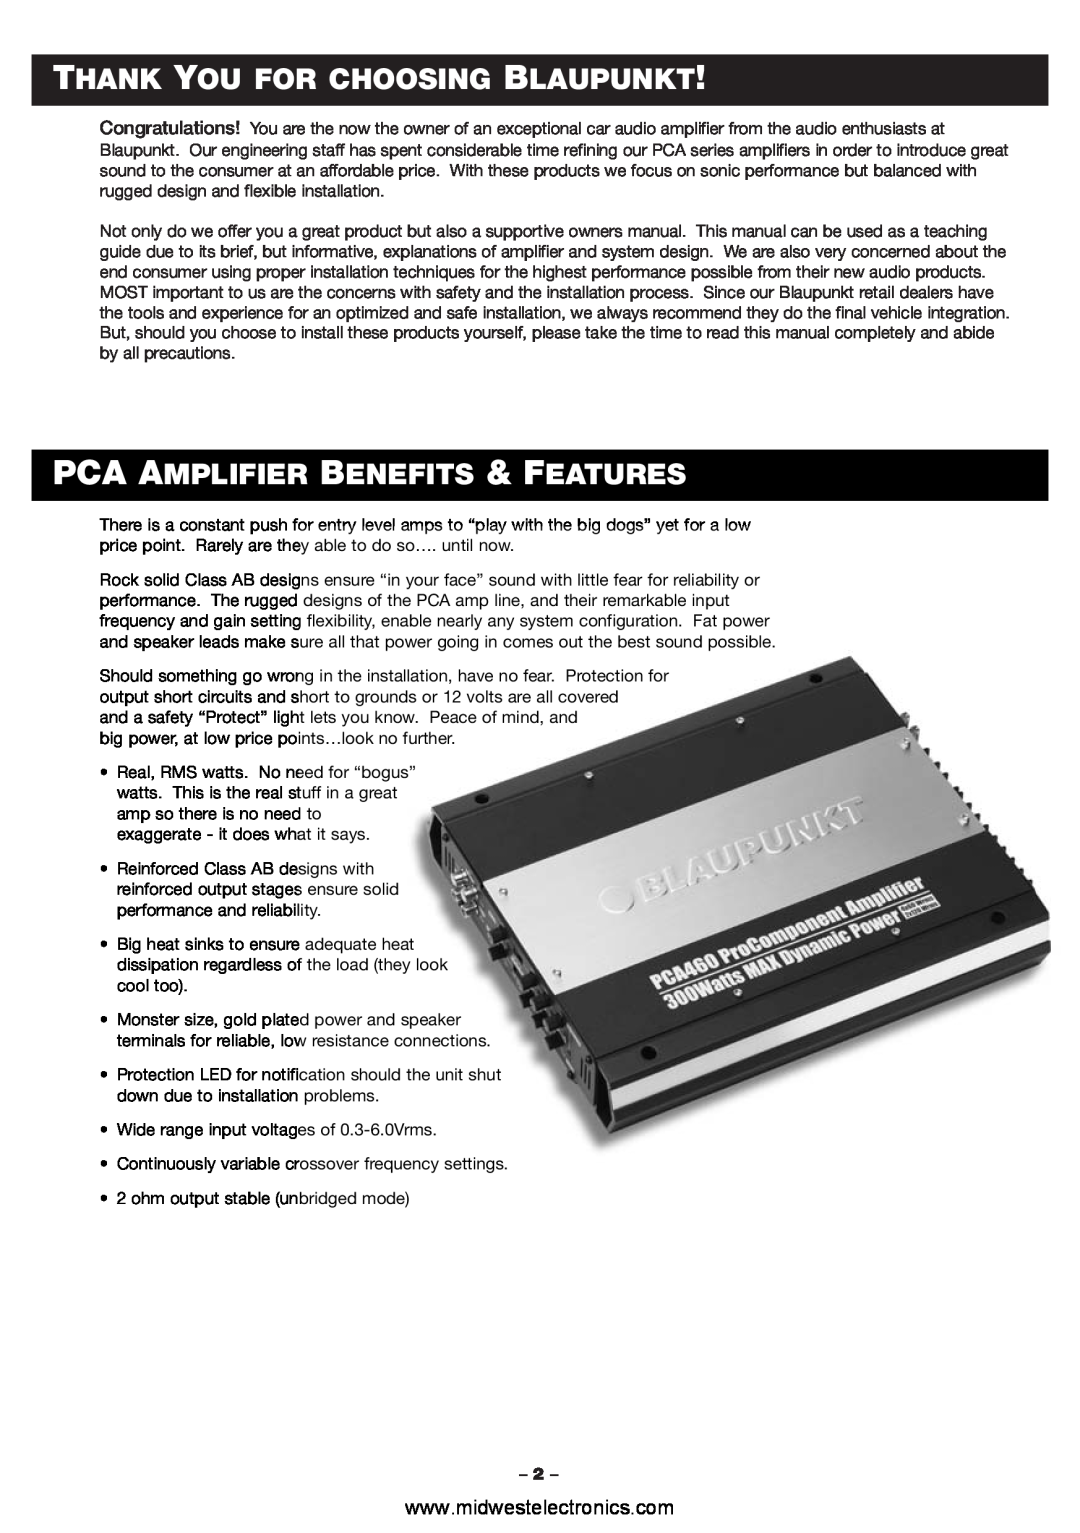 Blaupunkt PCA460 manual Thank You For Choosing Blaupunkt, Pca Amplifier Benefits & Features 